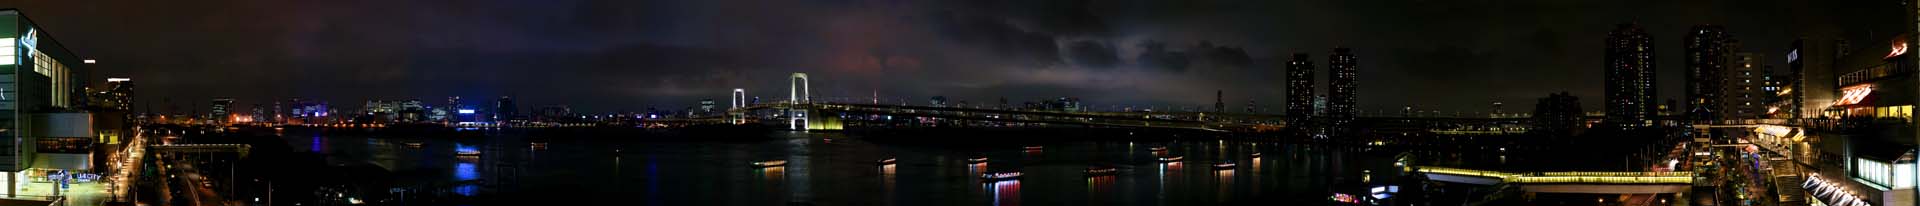 foto,tela,gratis,paisaje,fotografa,idea,Vista de noche de Tokio de Odaiba, Rainbow Bridge, Baha de Tokio, Barco de recreo, La playa